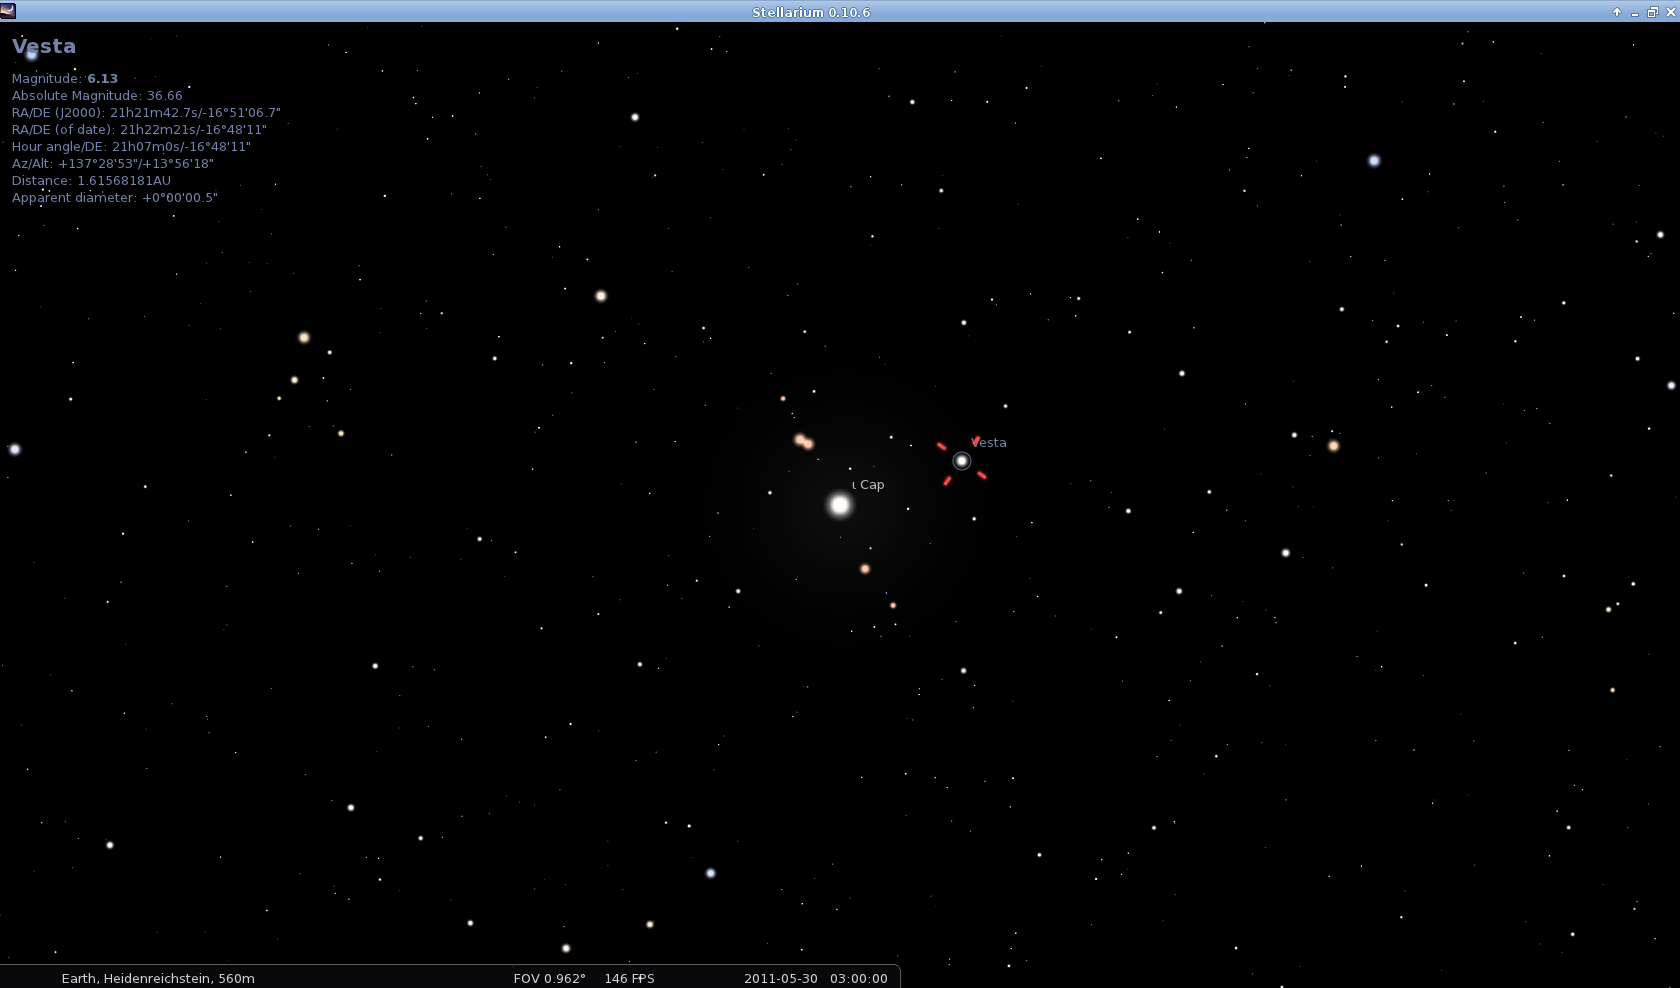 Location of Vesta 2011-05-30 03:00